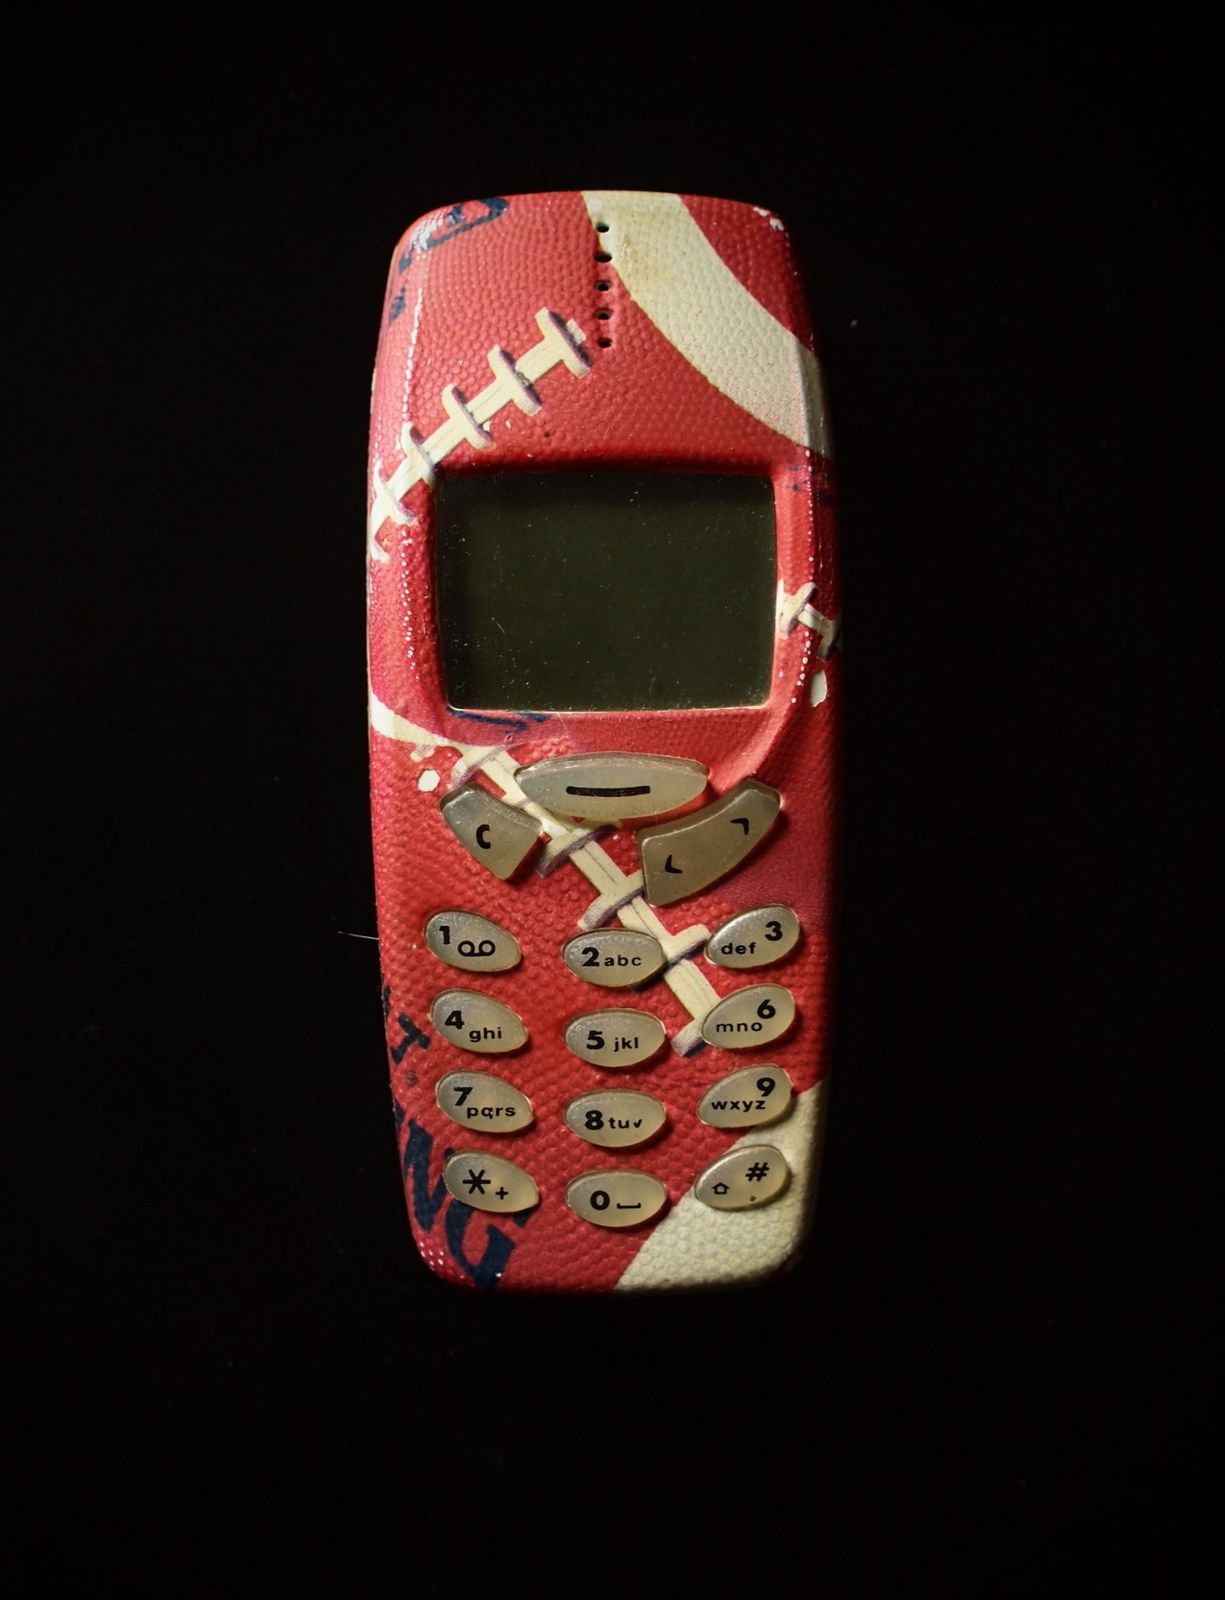 Coque-foot-US-Nokia-3310.JPG